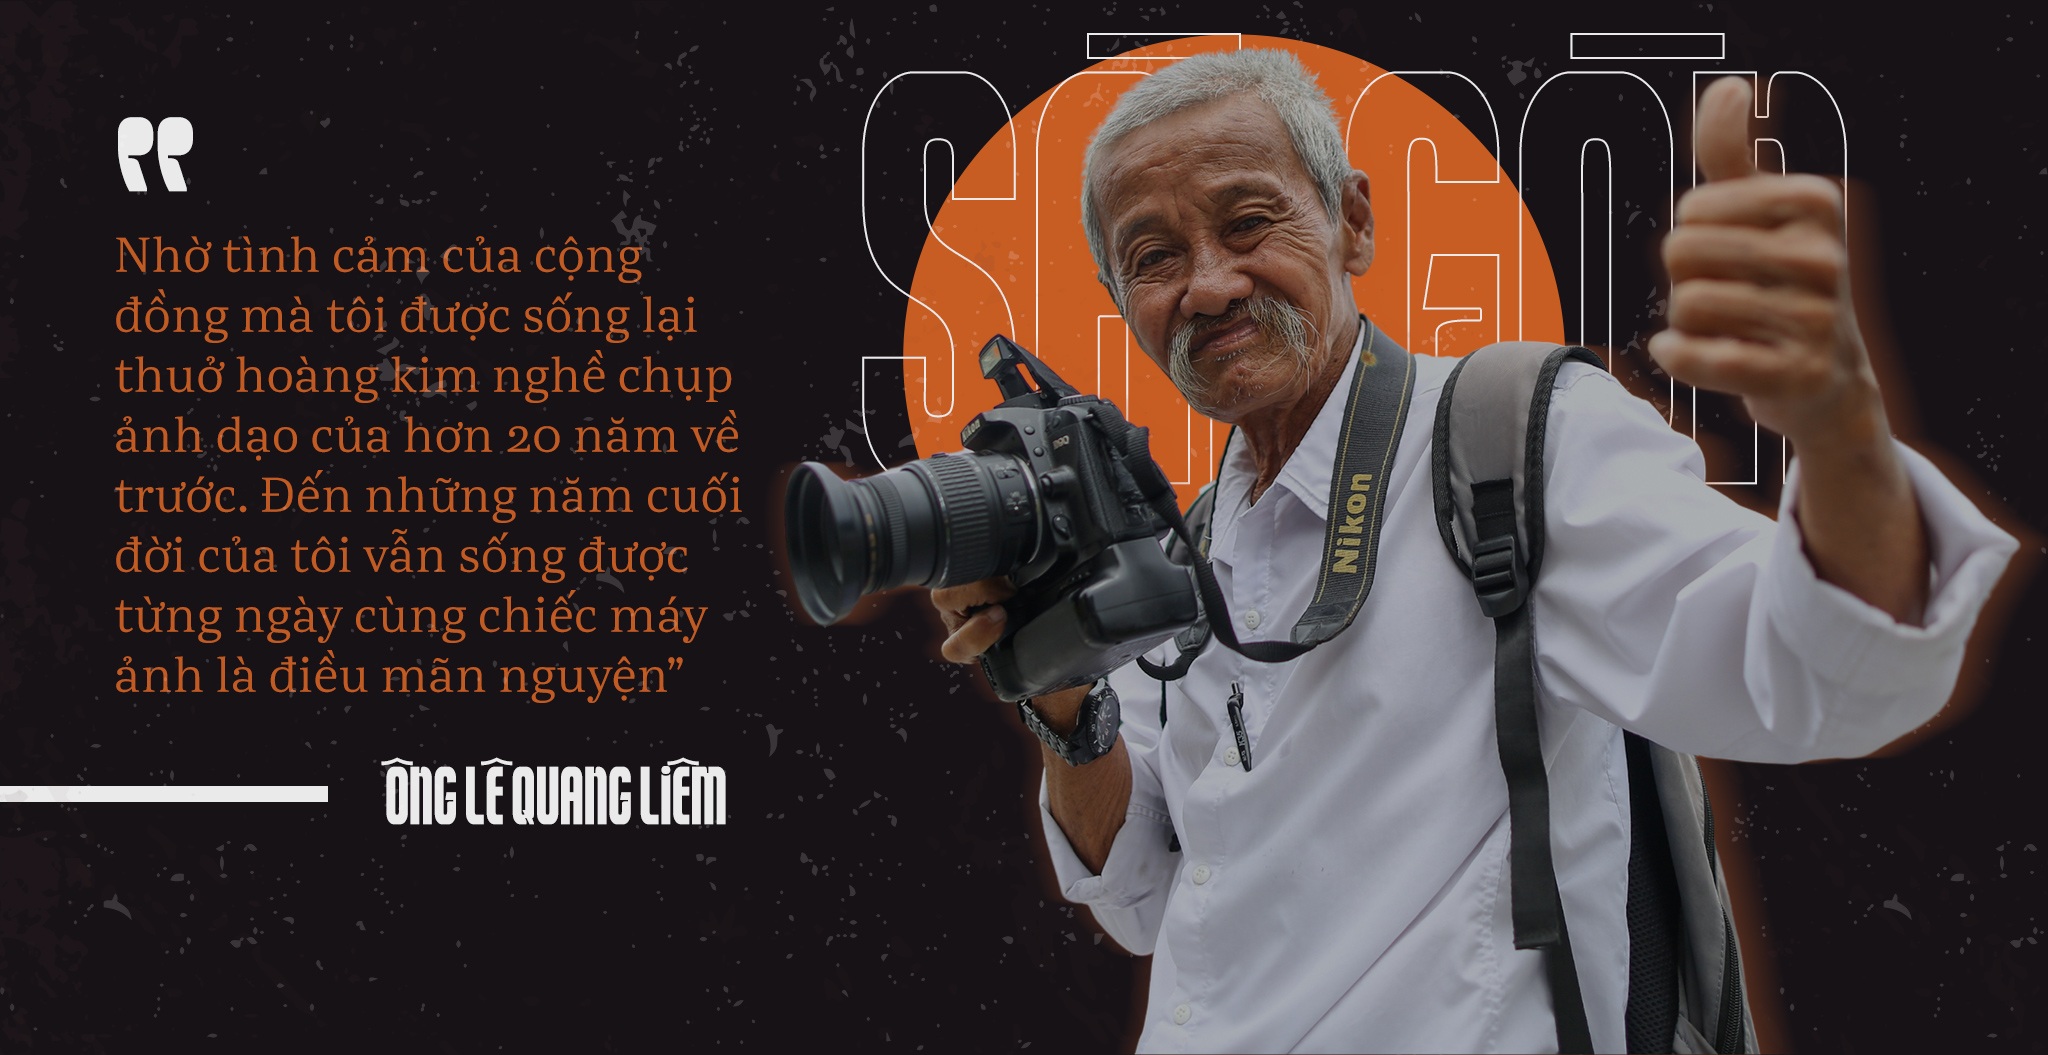 Tình người Sài Gòn làm sống lại ông thợ chụp hình già đìu hiu